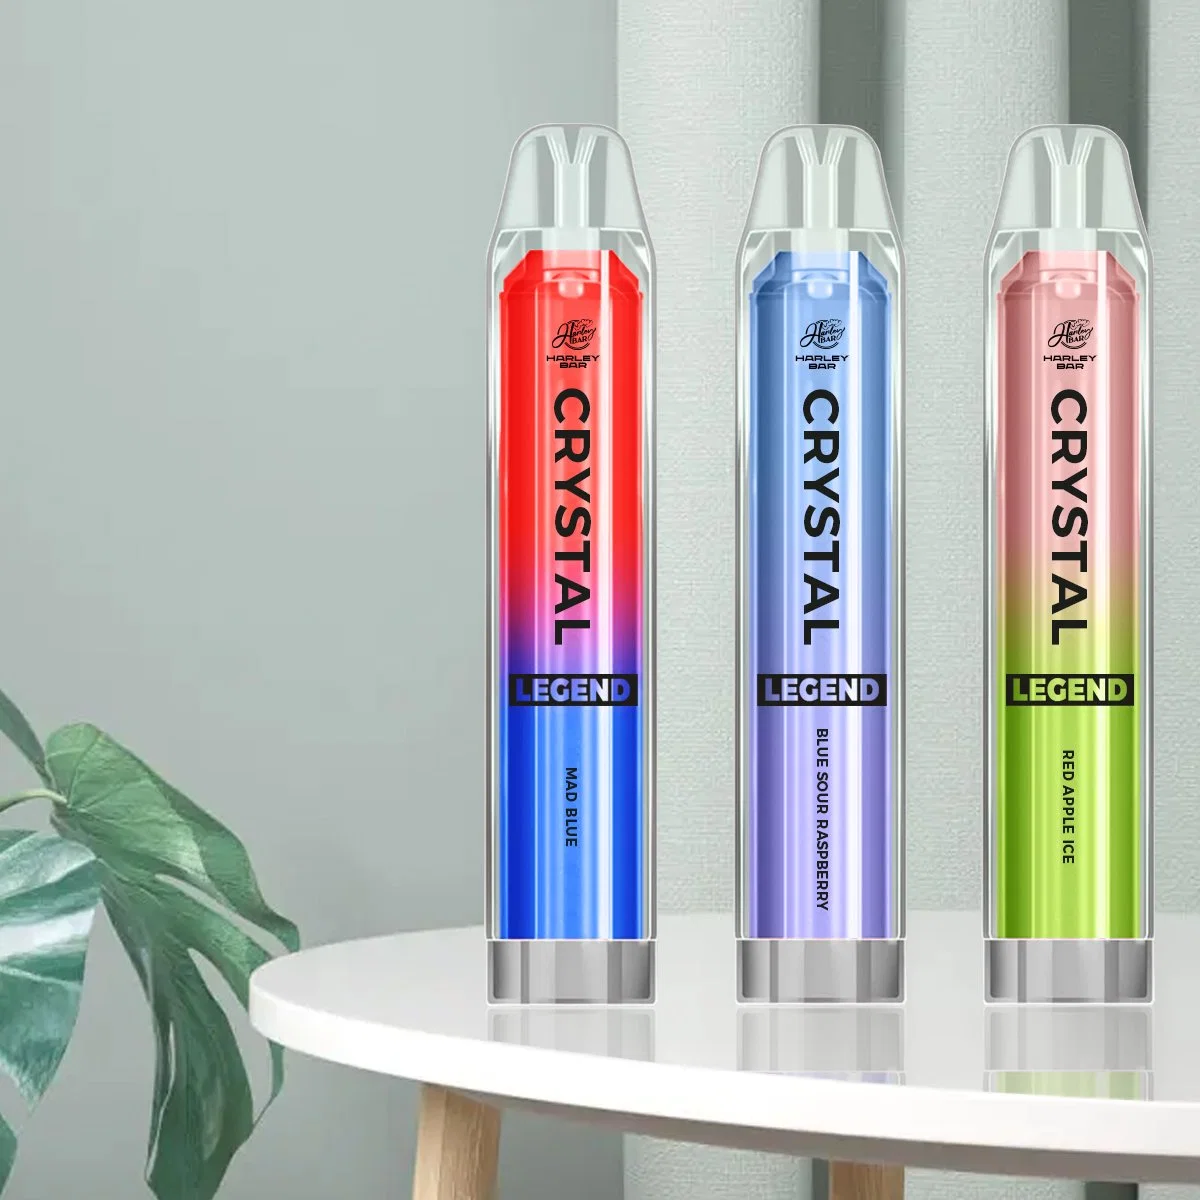 المملكة المتحدة بيع ساخنة Vape Pen Crystal Ske 0mg نيكوتين مصنع السعر 4000puffs مع 15 Flavors مسجل Tpd Puff الموزعون E السجائر